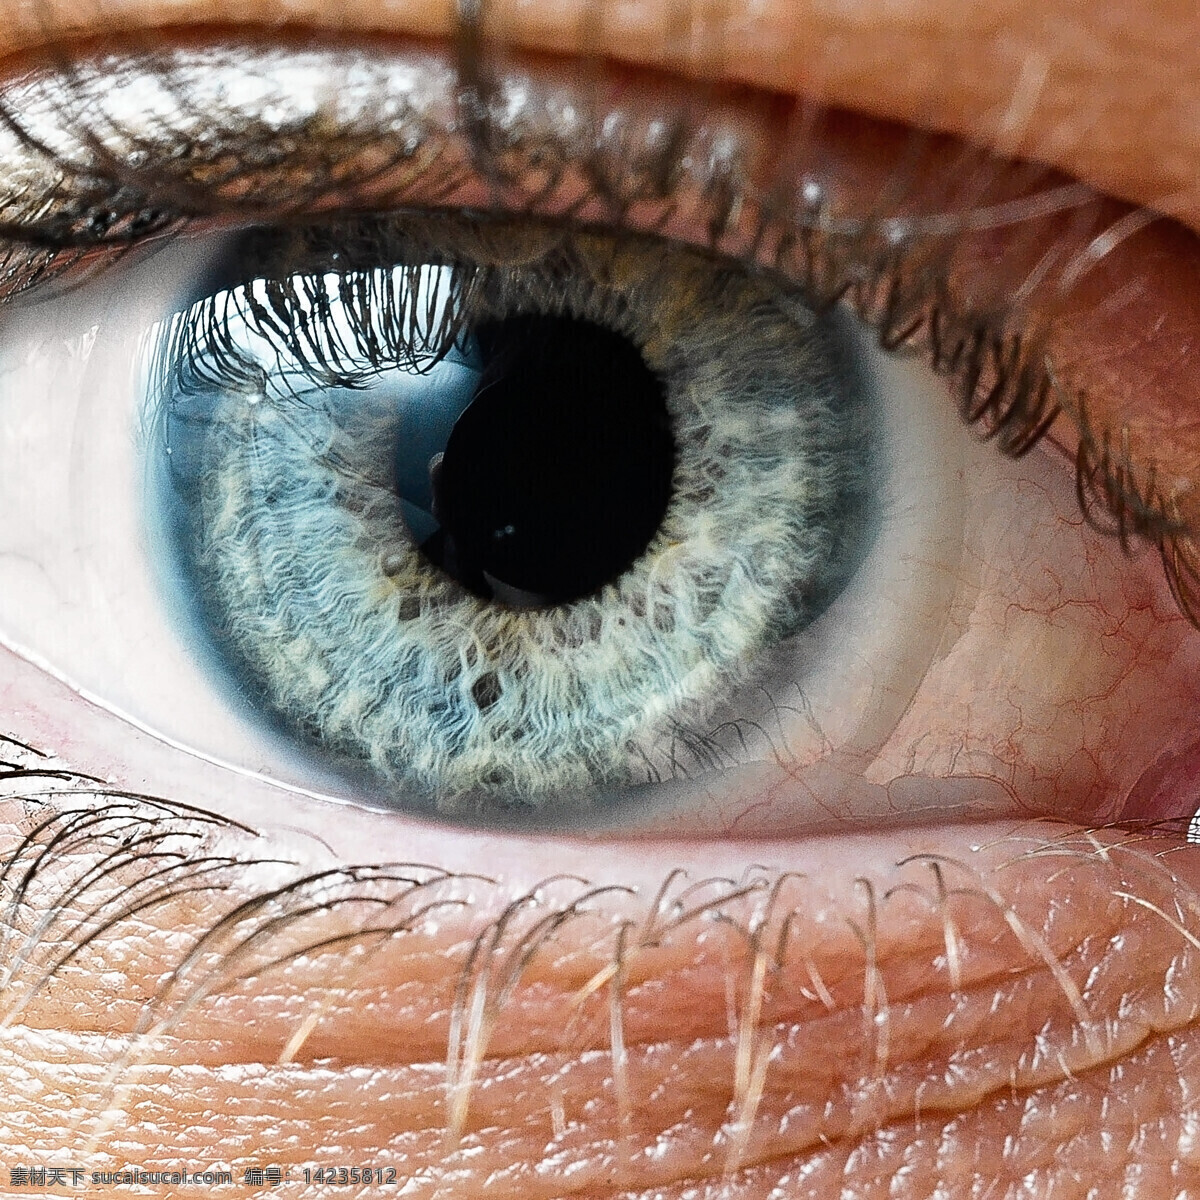 放大 眼睛 视网膜 眼球 眼球结构组织 瞳孔 性感美女 人体器官 人体器官图 人物图片